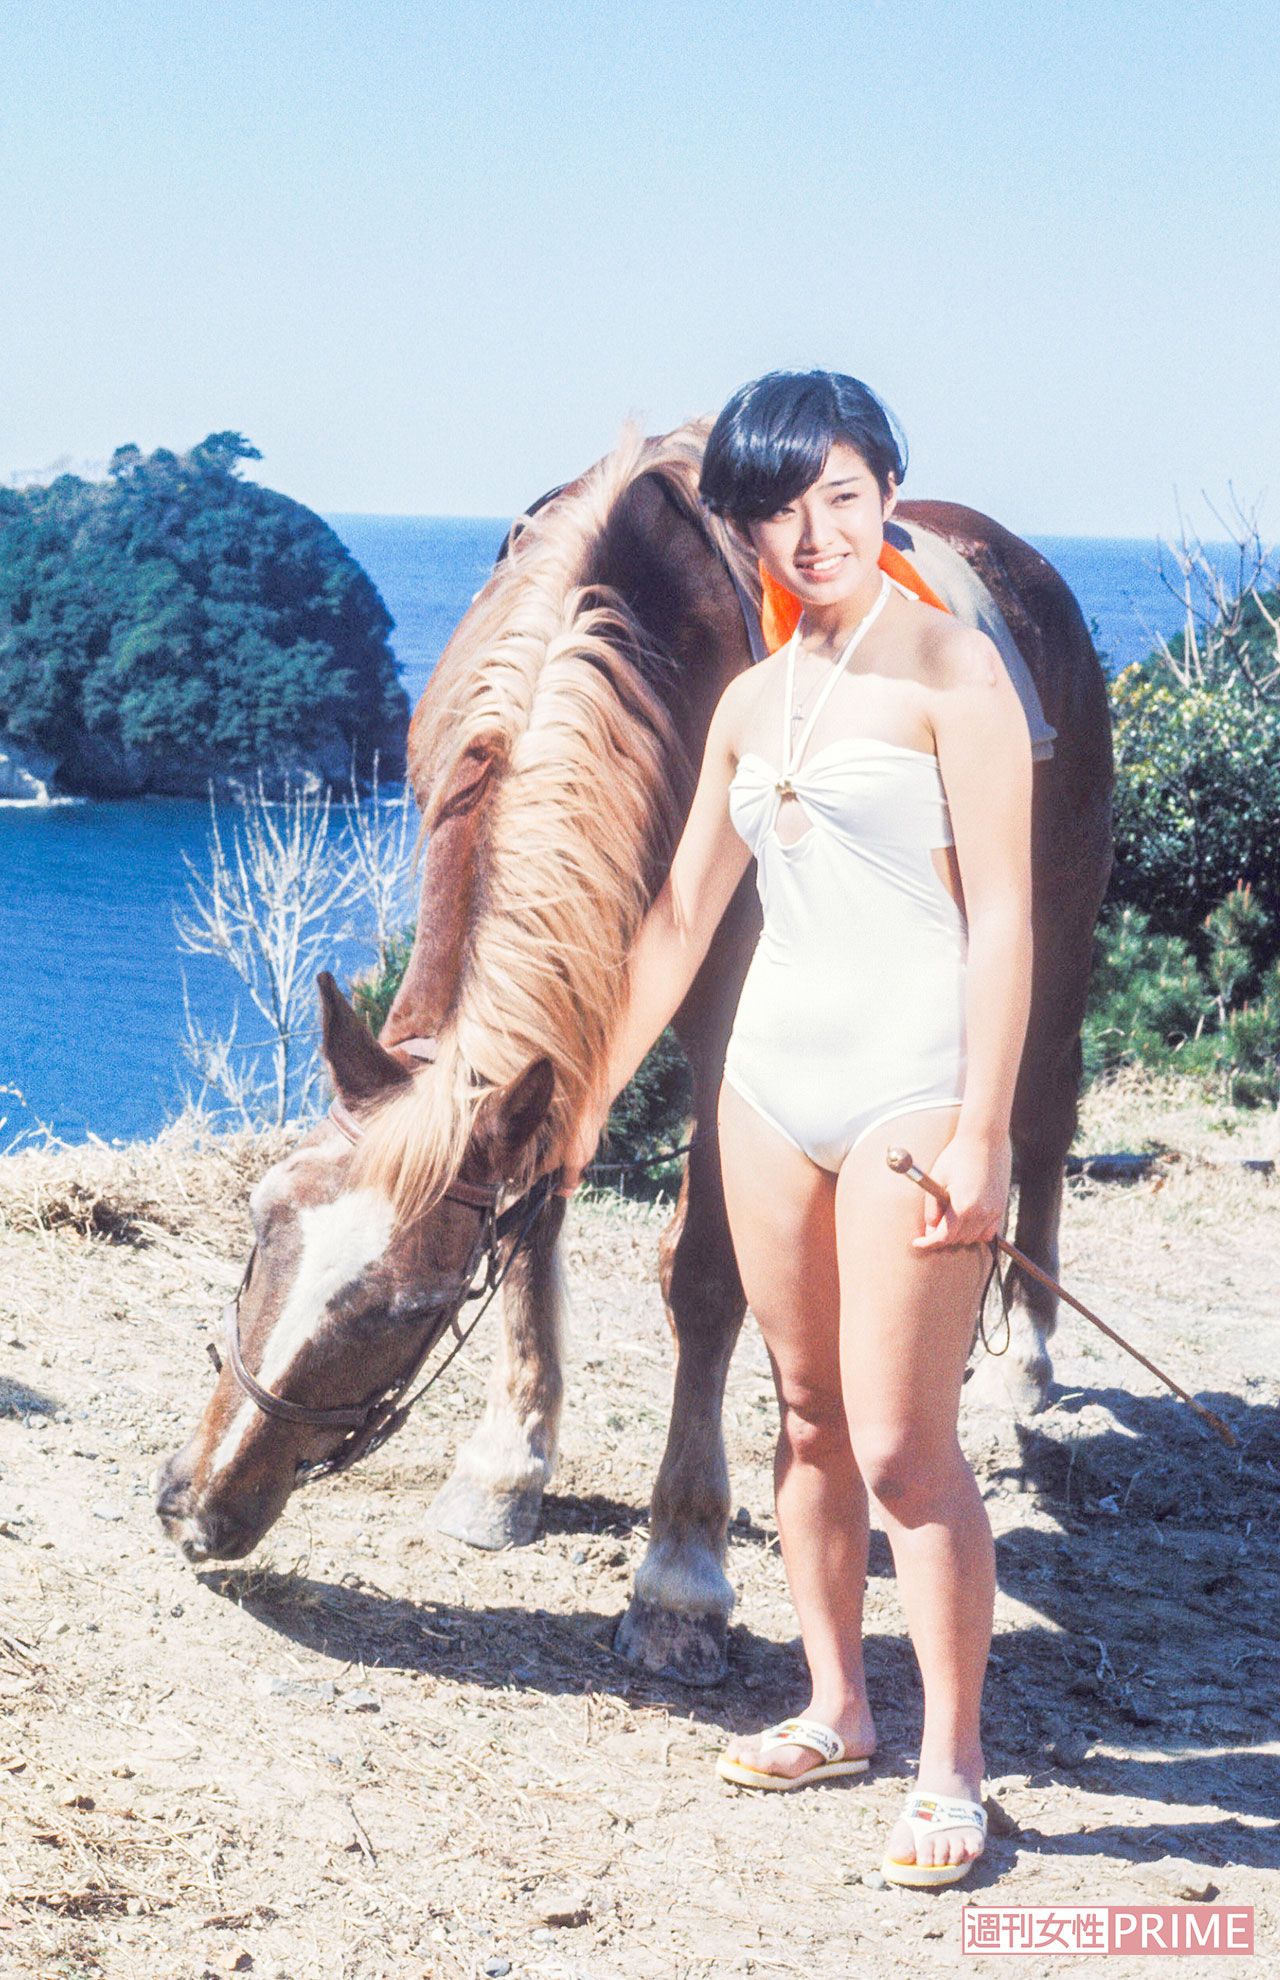 山口百恵の画像 写真 映画 エデンの海 撮影時 ロケは西伊豆の松崎町で行われた 76年3月 撮影 週刊女性写真班 12枚目 週刊女性prime